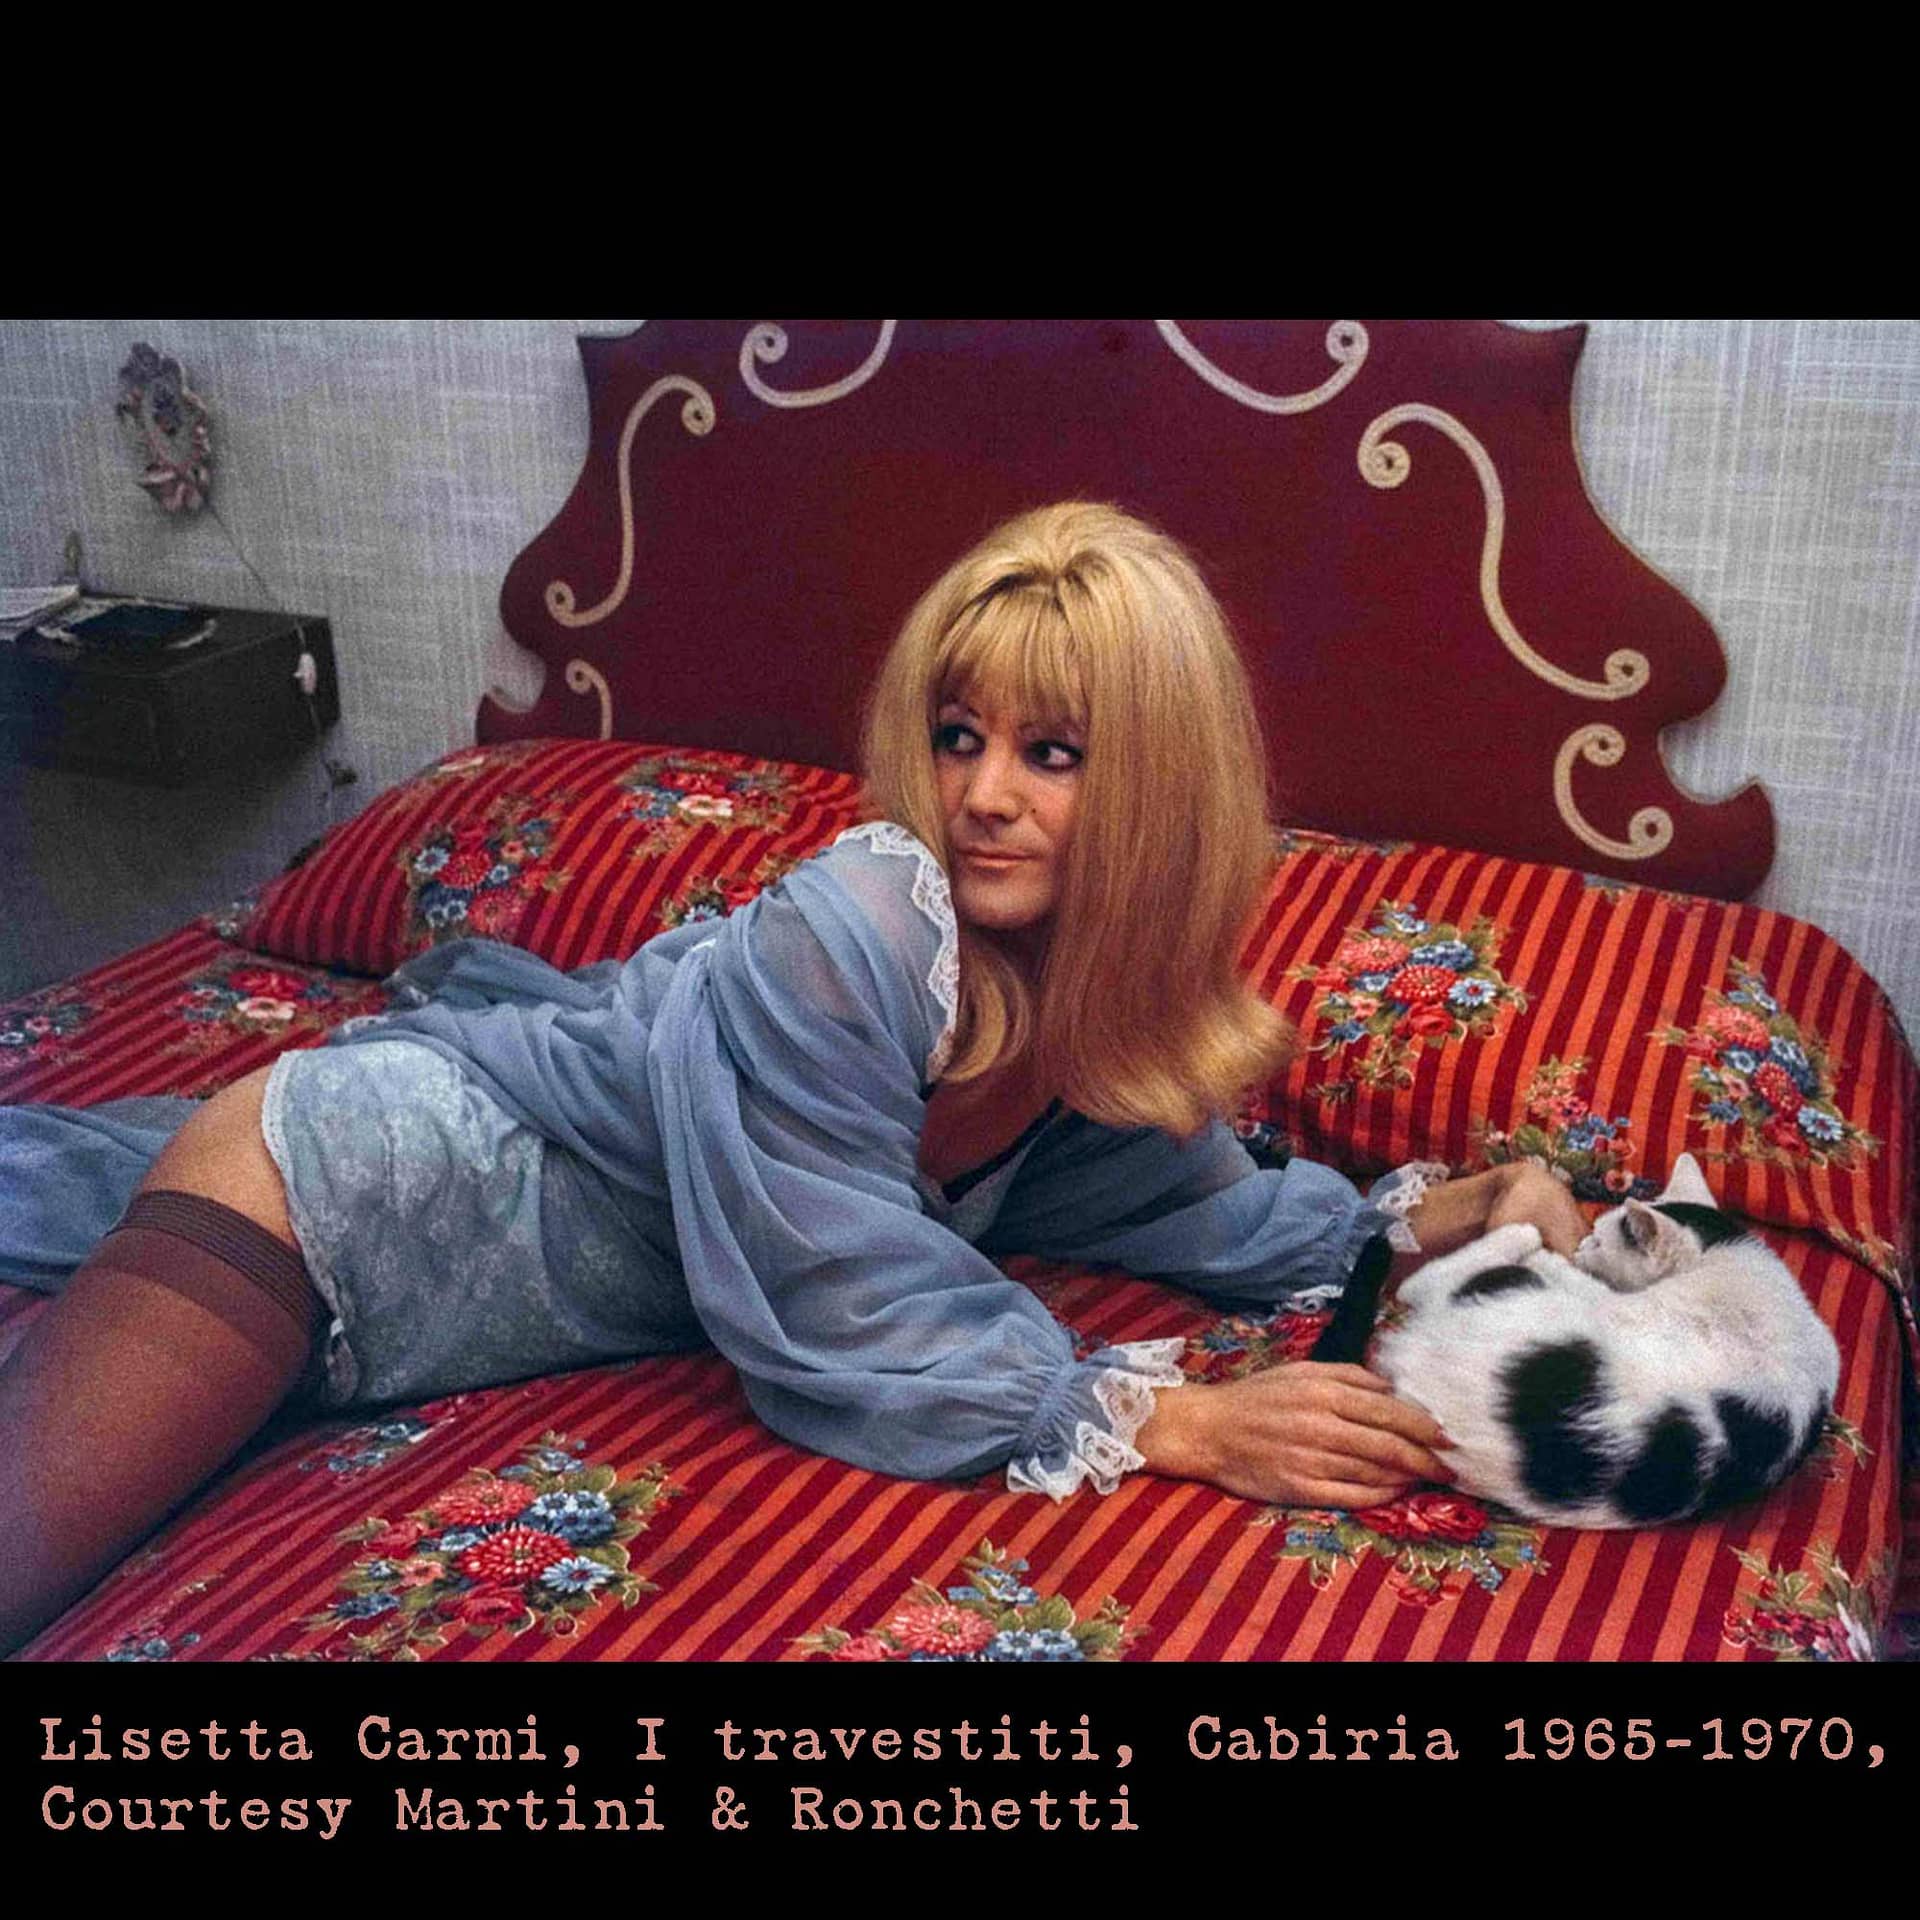 Lisetta Carmi, I travestiti, Cabiria 1965-1970, Courtesy Martini & Ronchetti